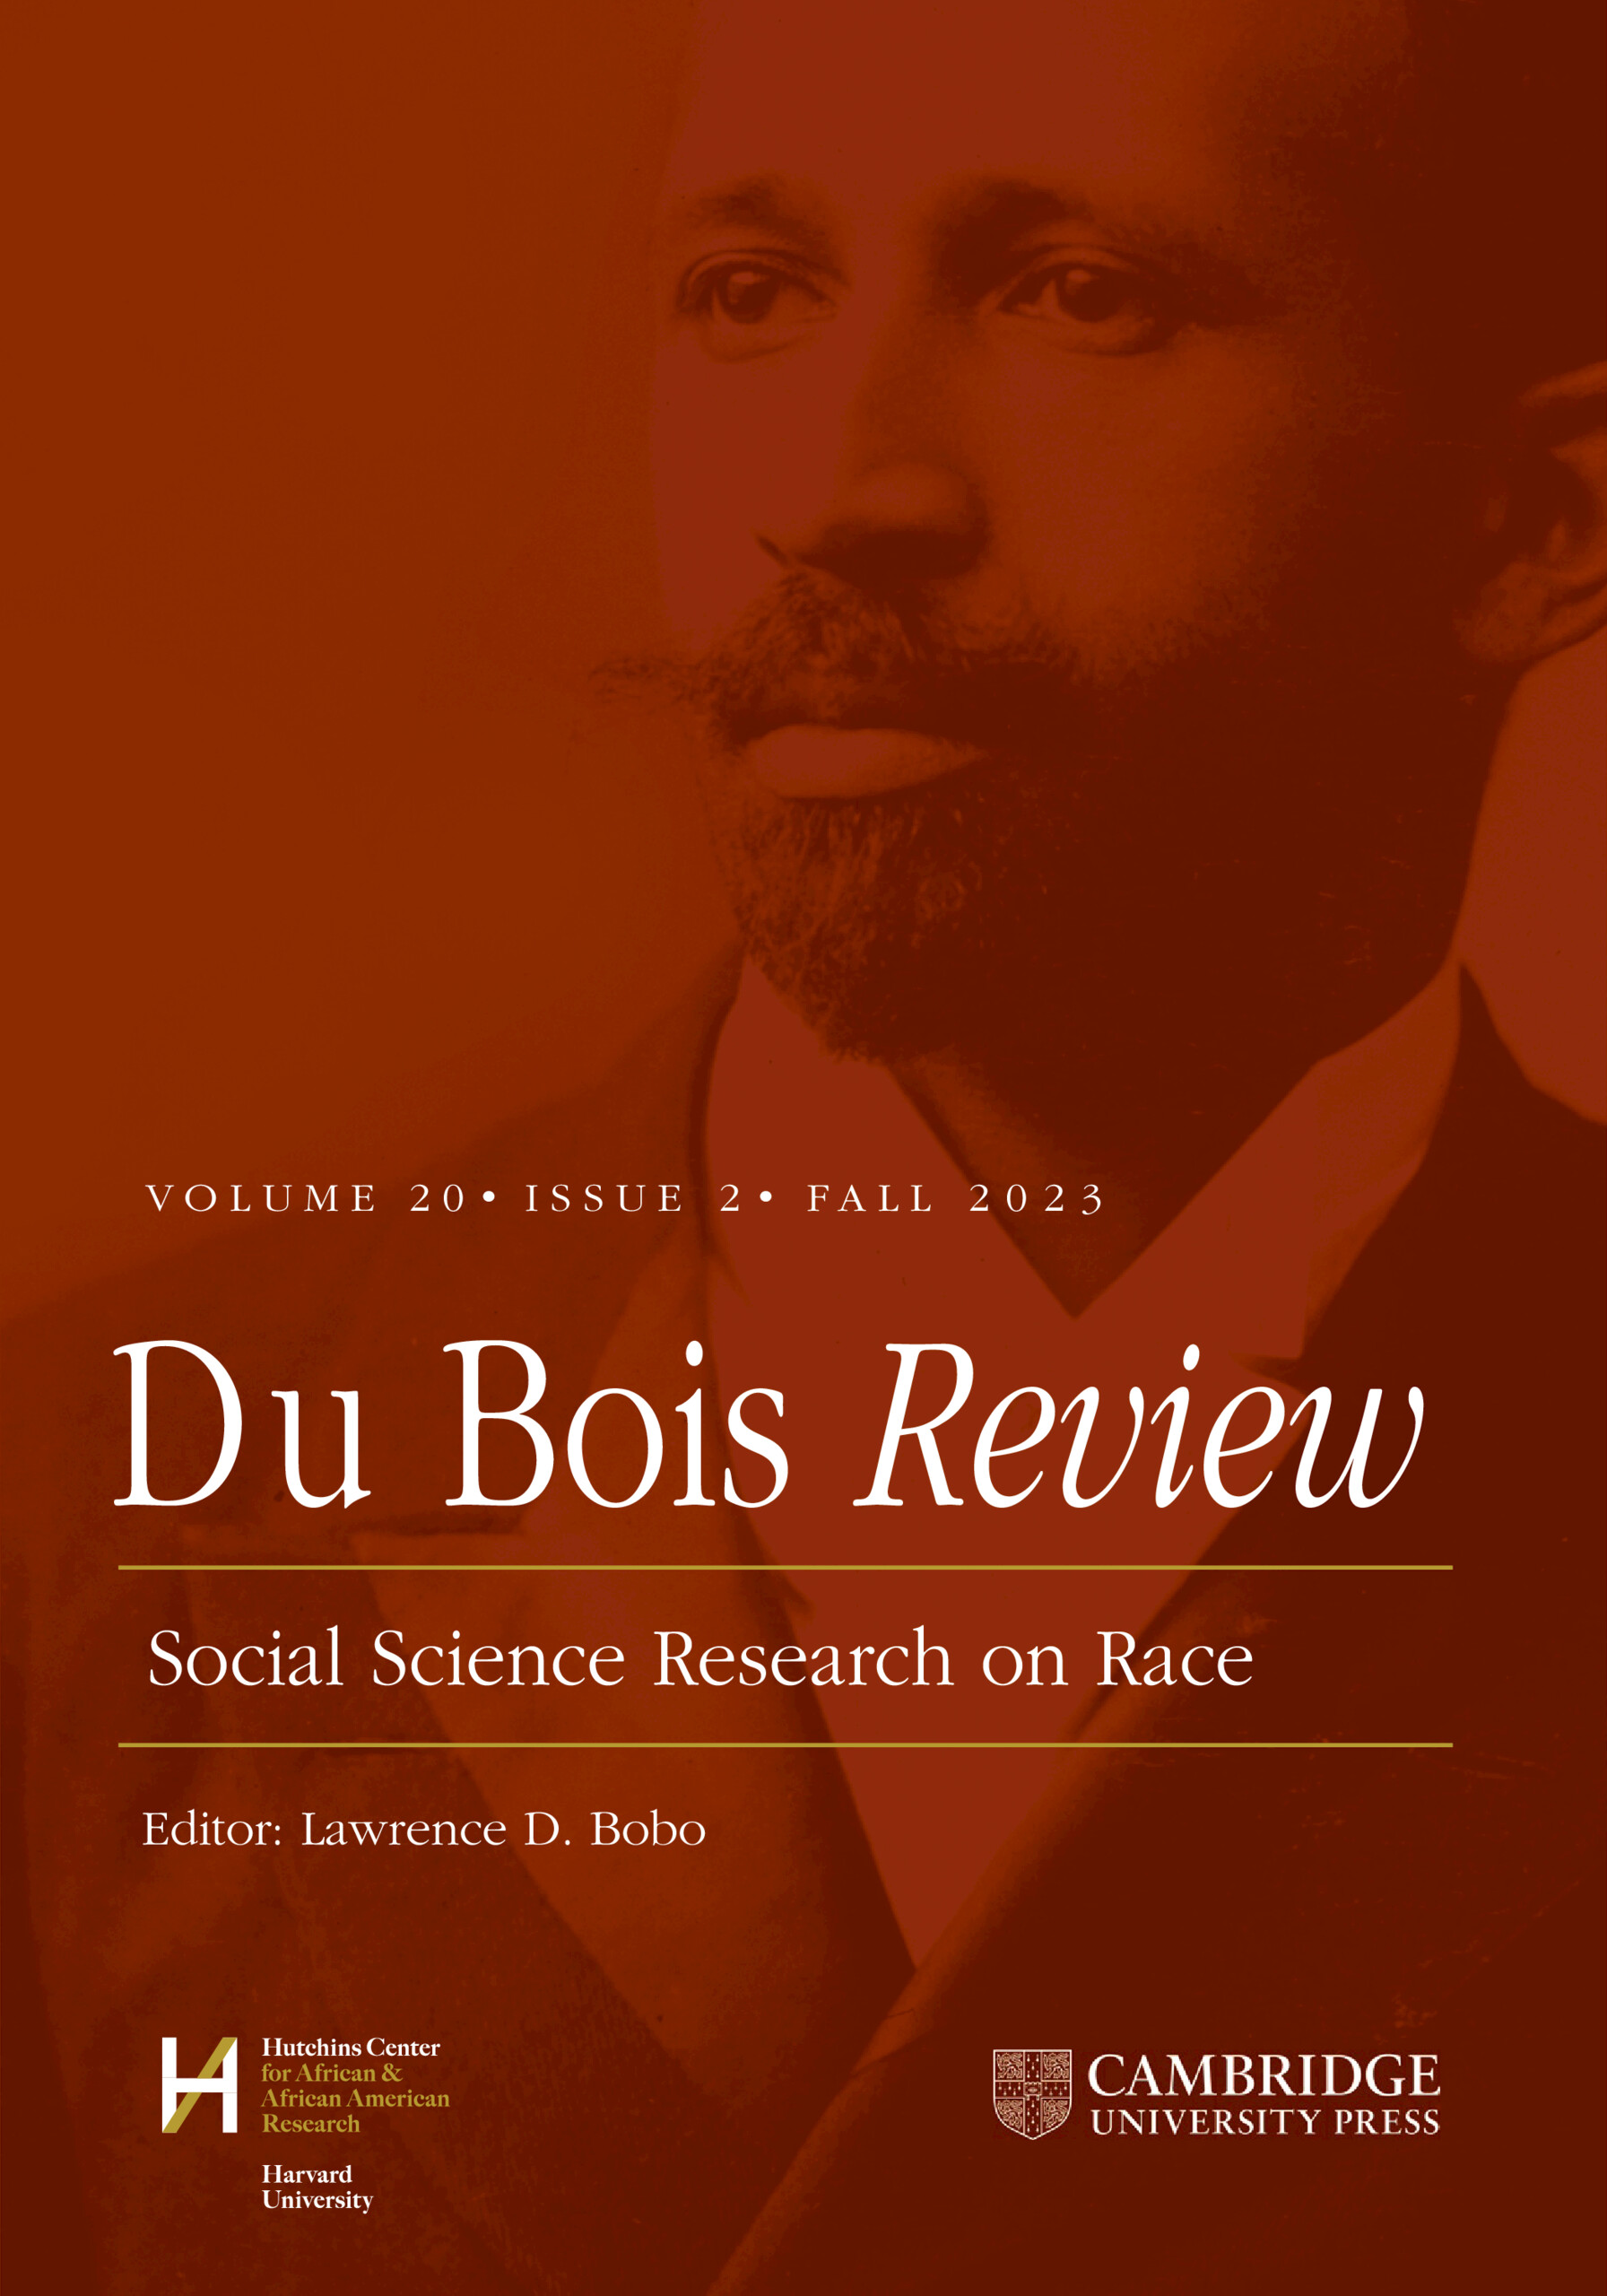 Du Bois Review: Social Science Research on Race